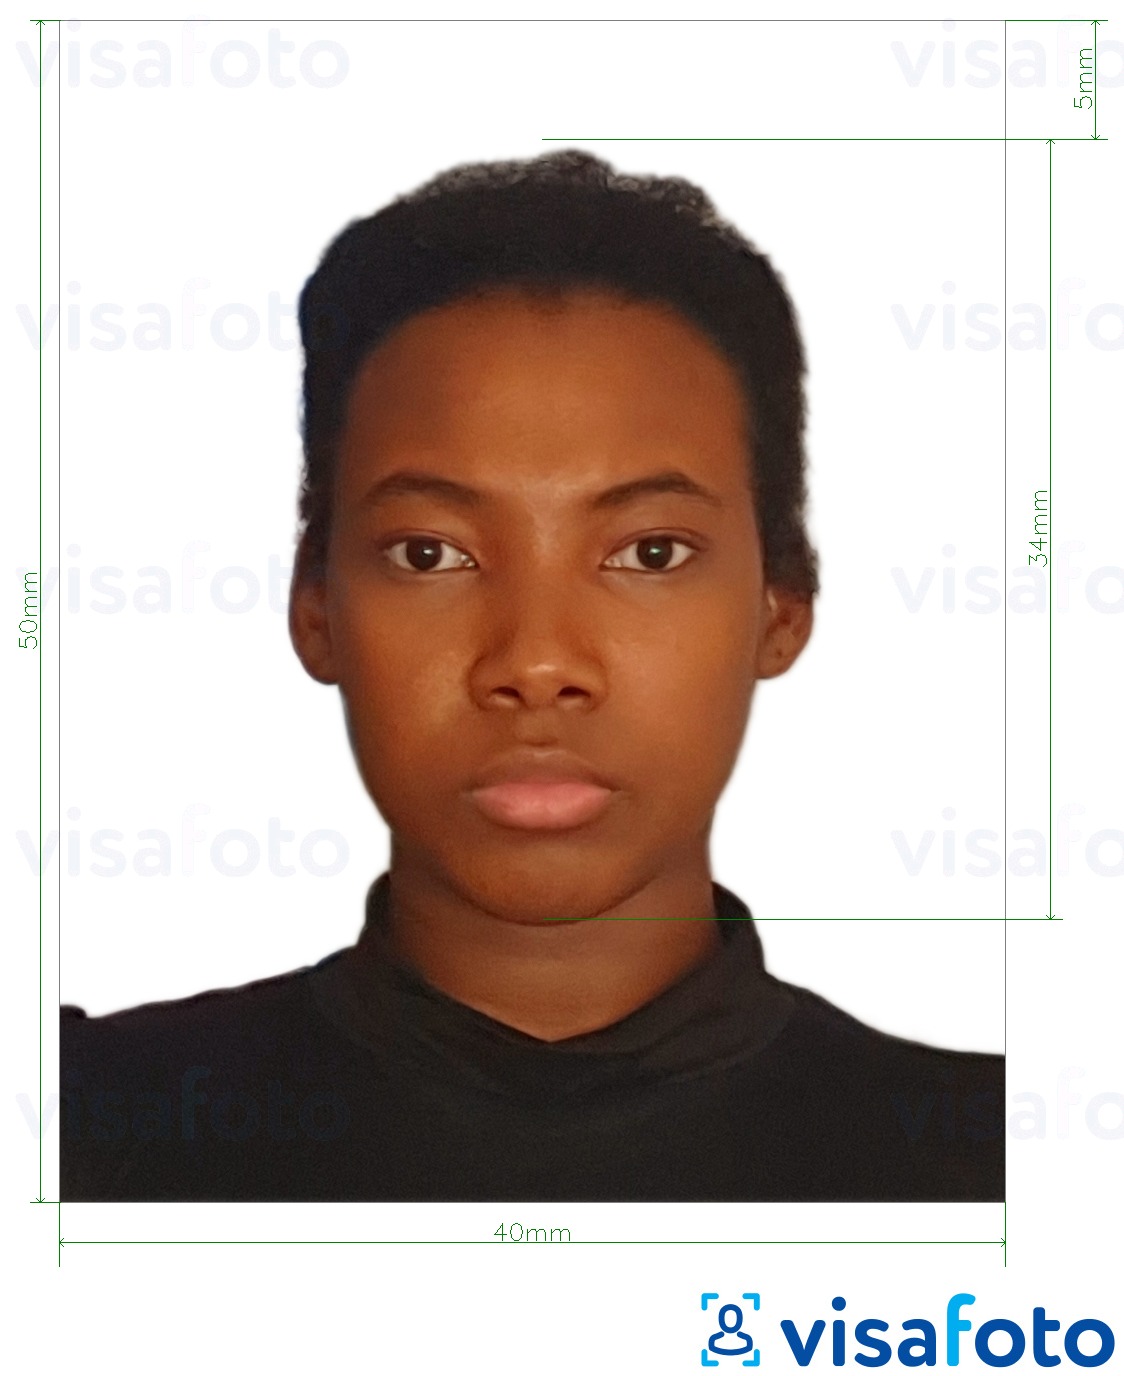 Exemple de foto per a Passaport Camerun 4x5 cm (40x50 mm) amb la mida exacta especificada